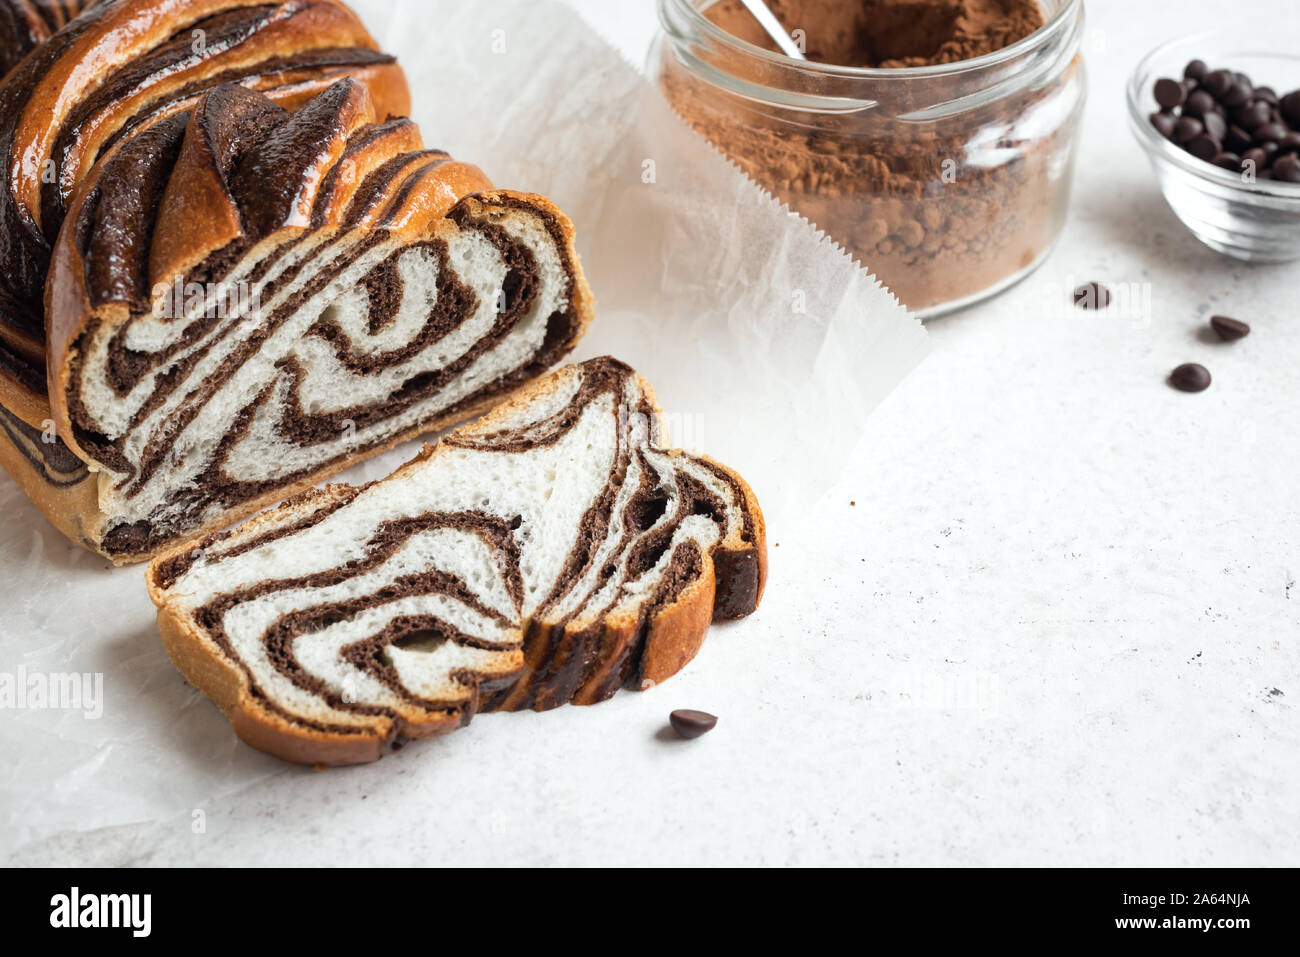 Babka chocolat ou pain brioché. Pâtisserie Maison désert sucré - tourbillon de chocolat, pain, tranchés sur fond blanc. Banque D'Images